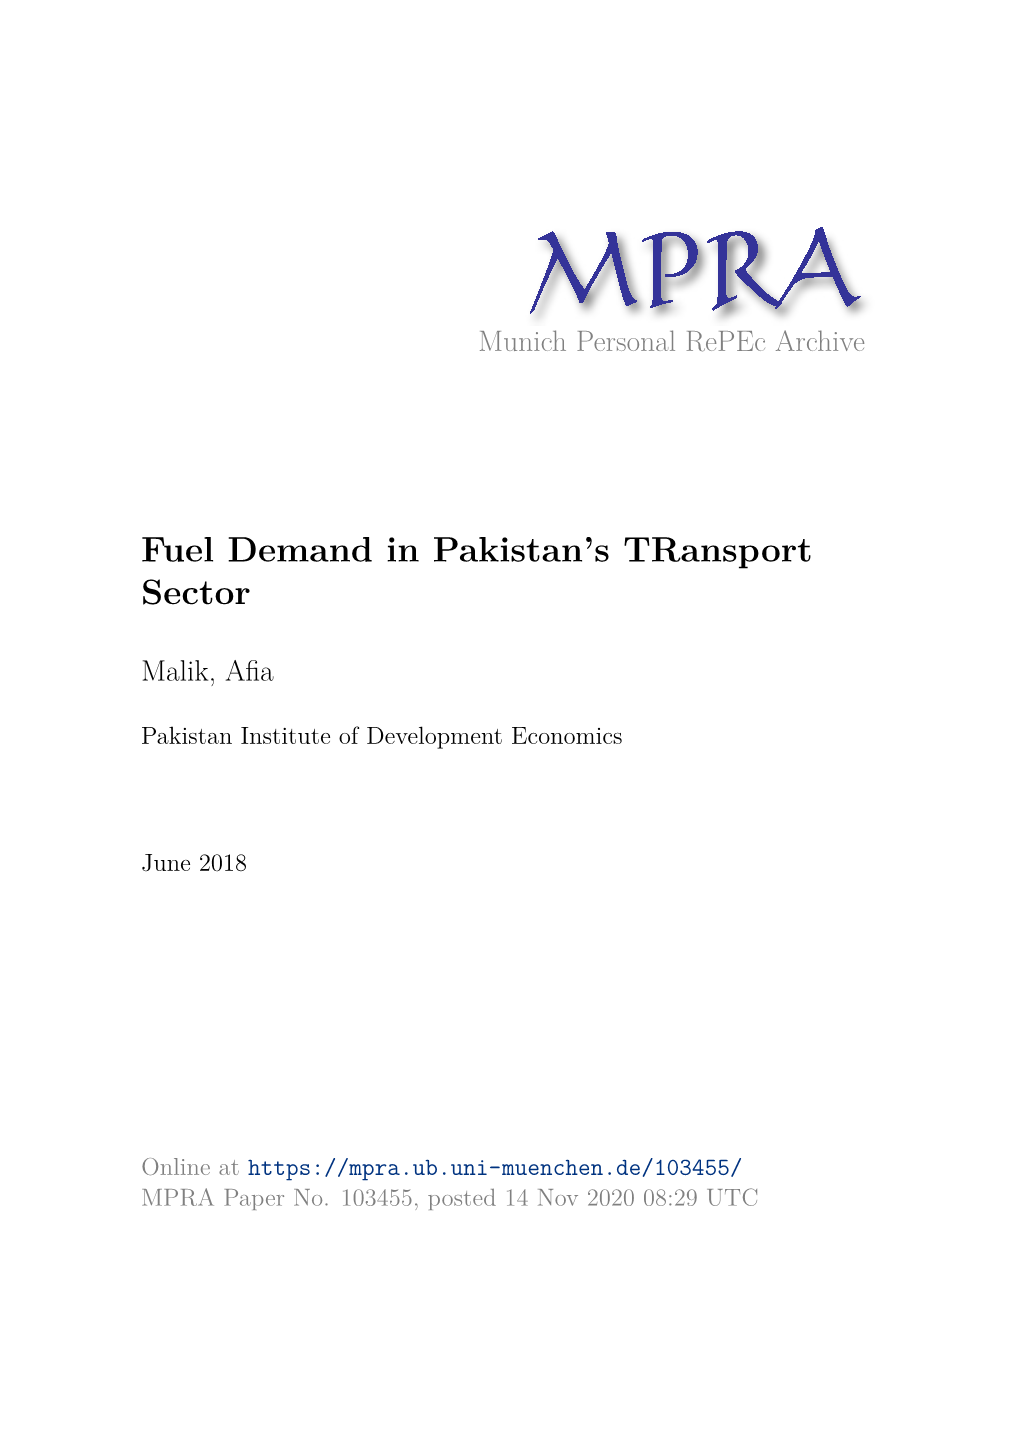 Fuel Demand in Pakistan's Transport Sector